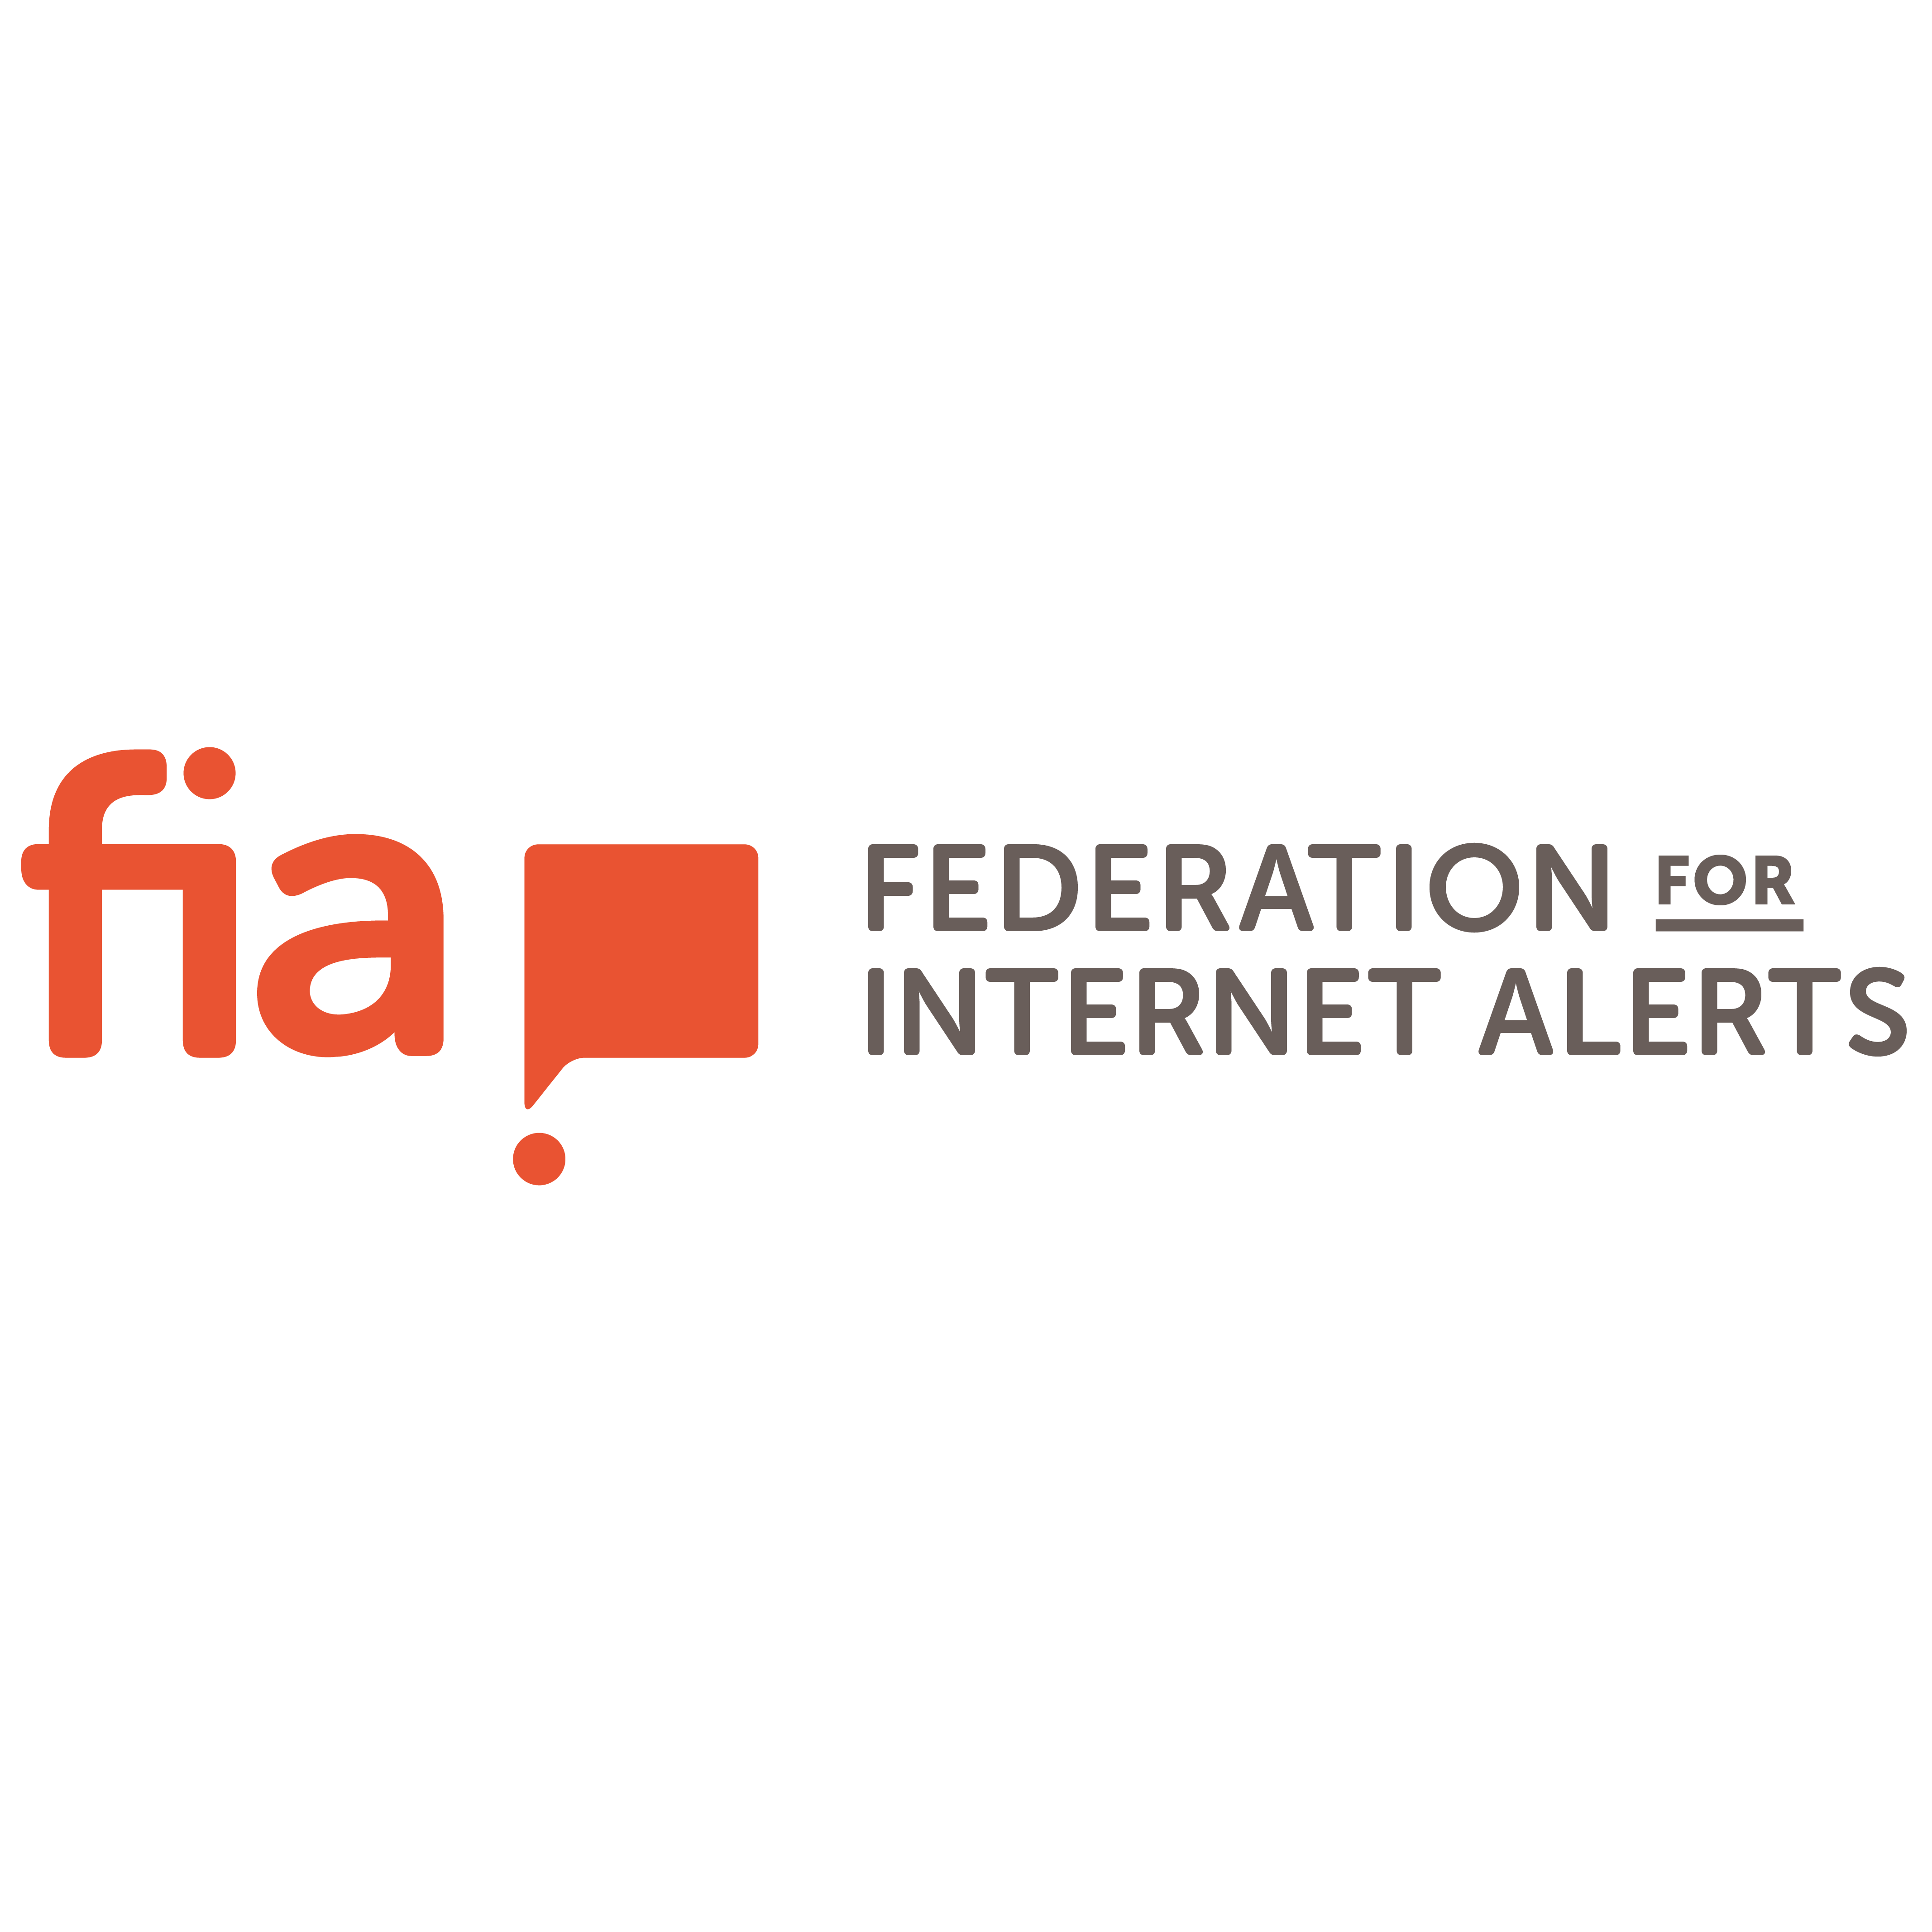 Federation for Internet Alerts logo